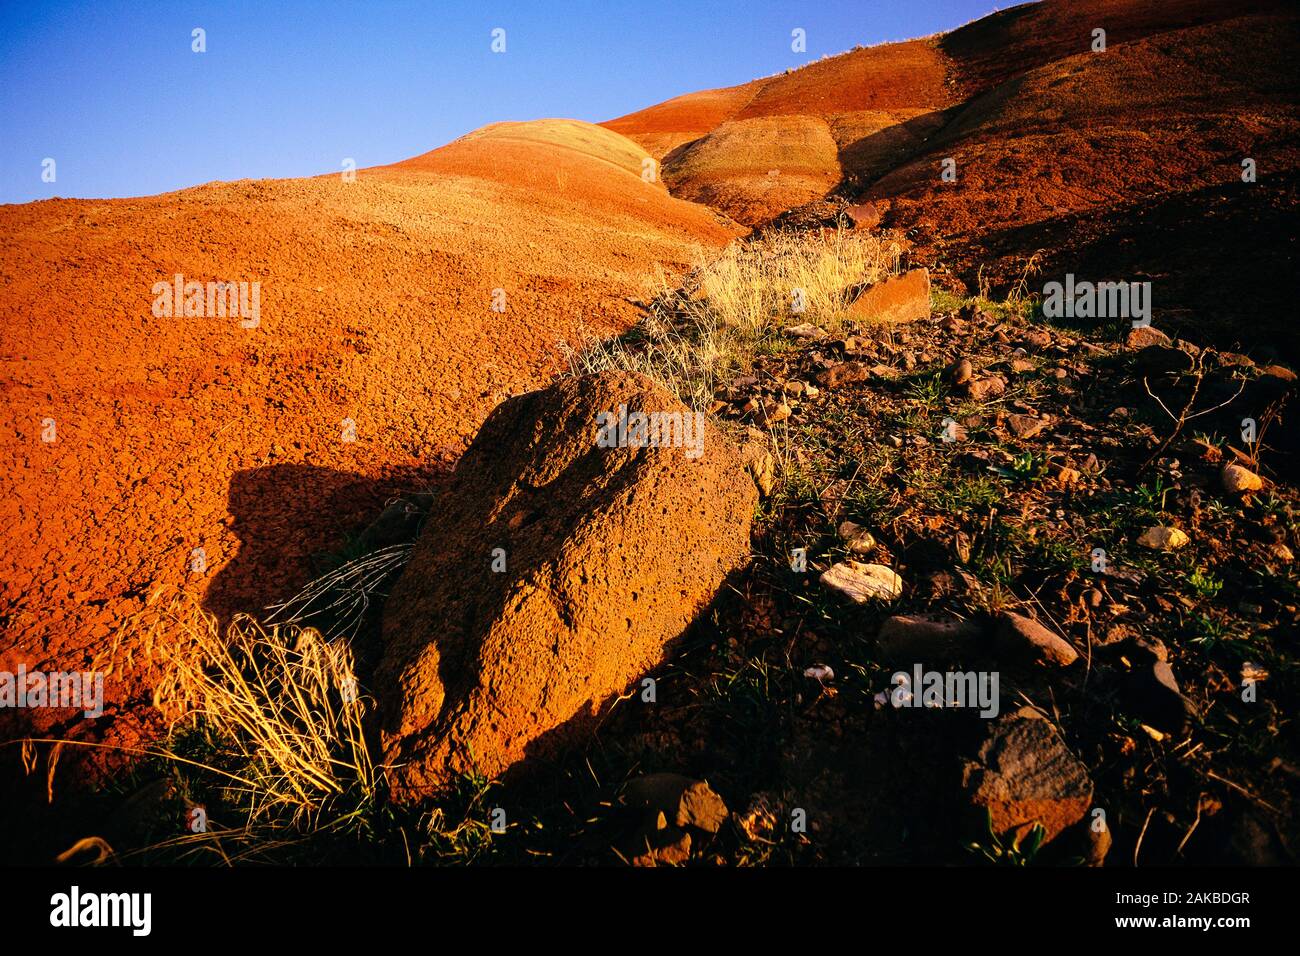 Paisaje con formaciones rocosas en el desierto, John Día yacimientos fósiles National Park, Oregón, EE.UU. Foto de stock